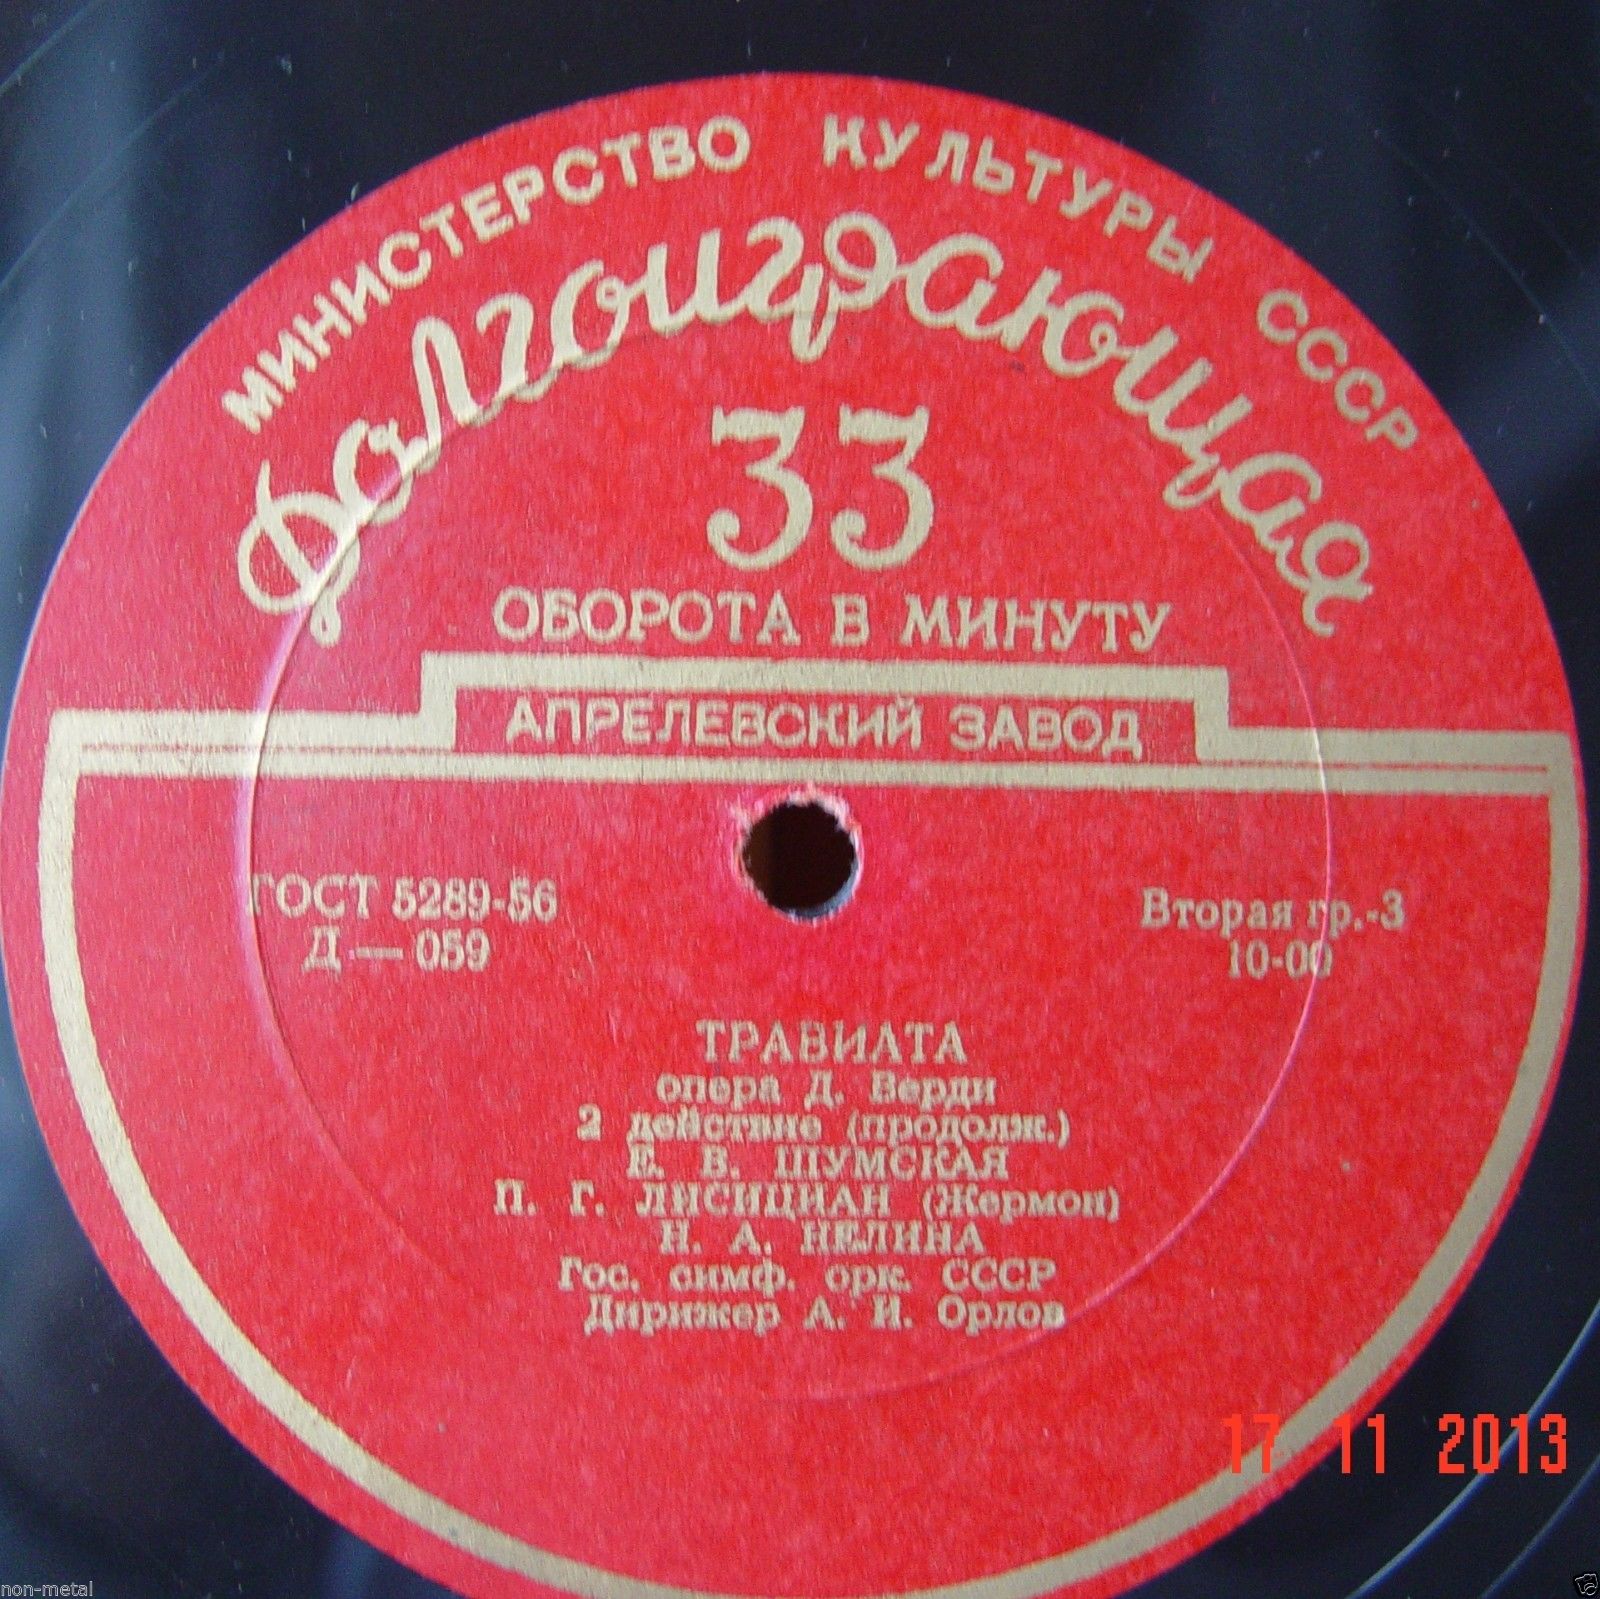 Дж. ВЕРДИ (1813–1901): «Травиата», опера в 4 д. (А. Орлов)